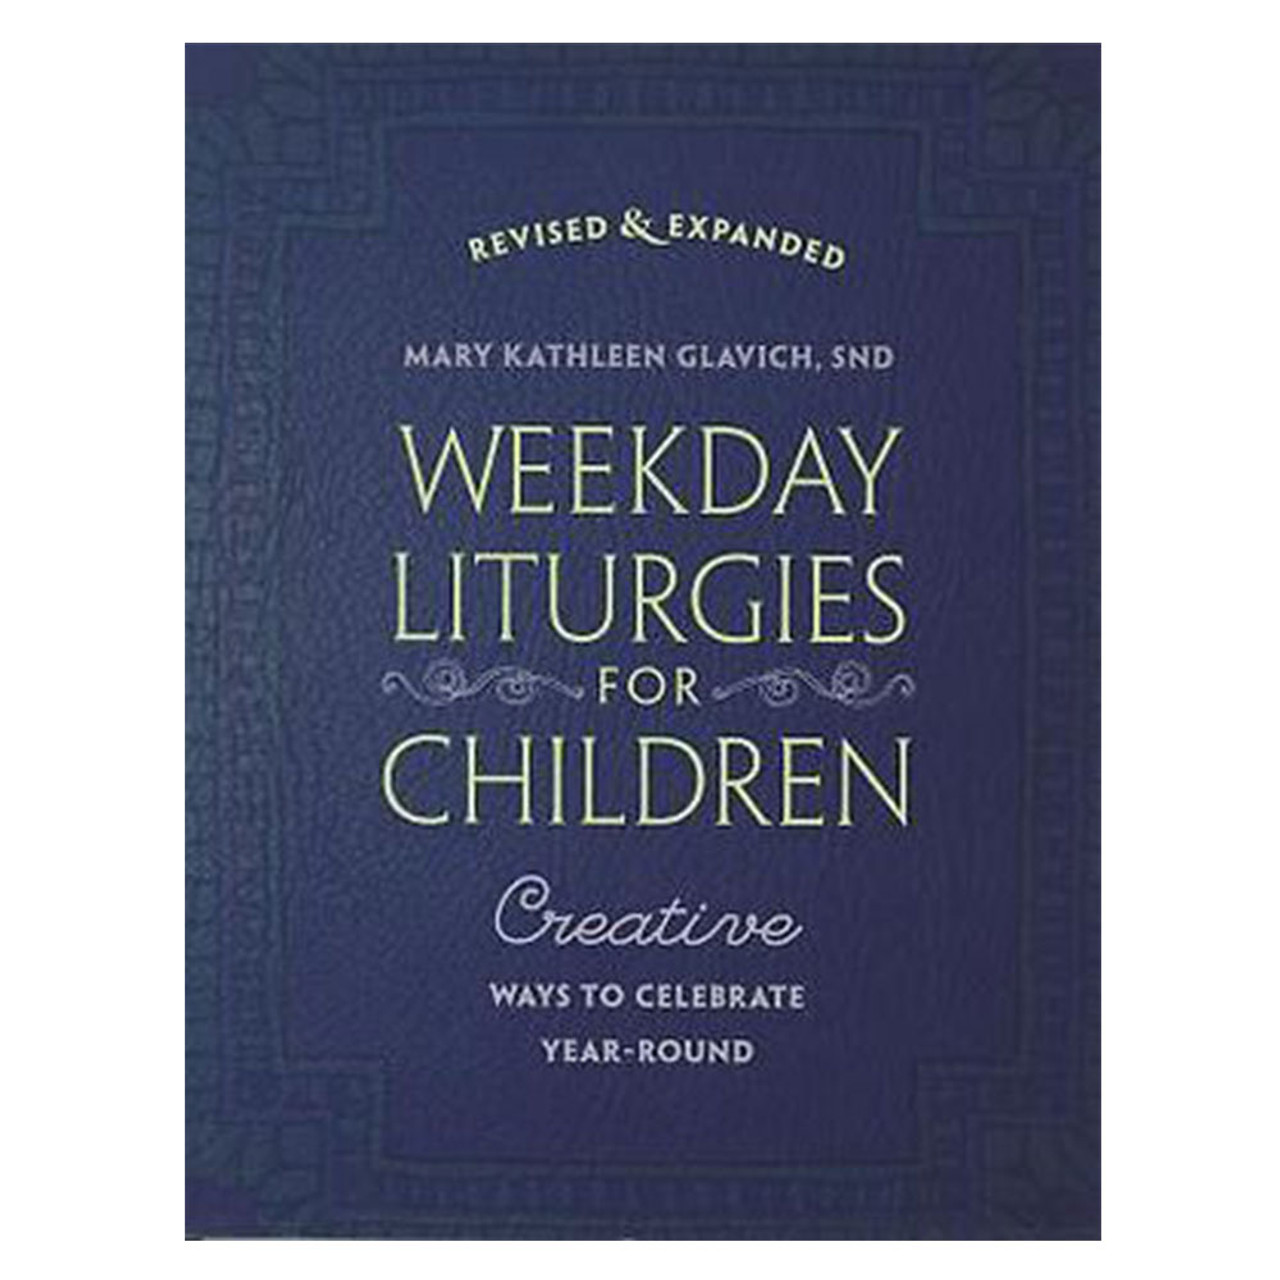 Weekday Liturgies for Children SR K Glavich SND